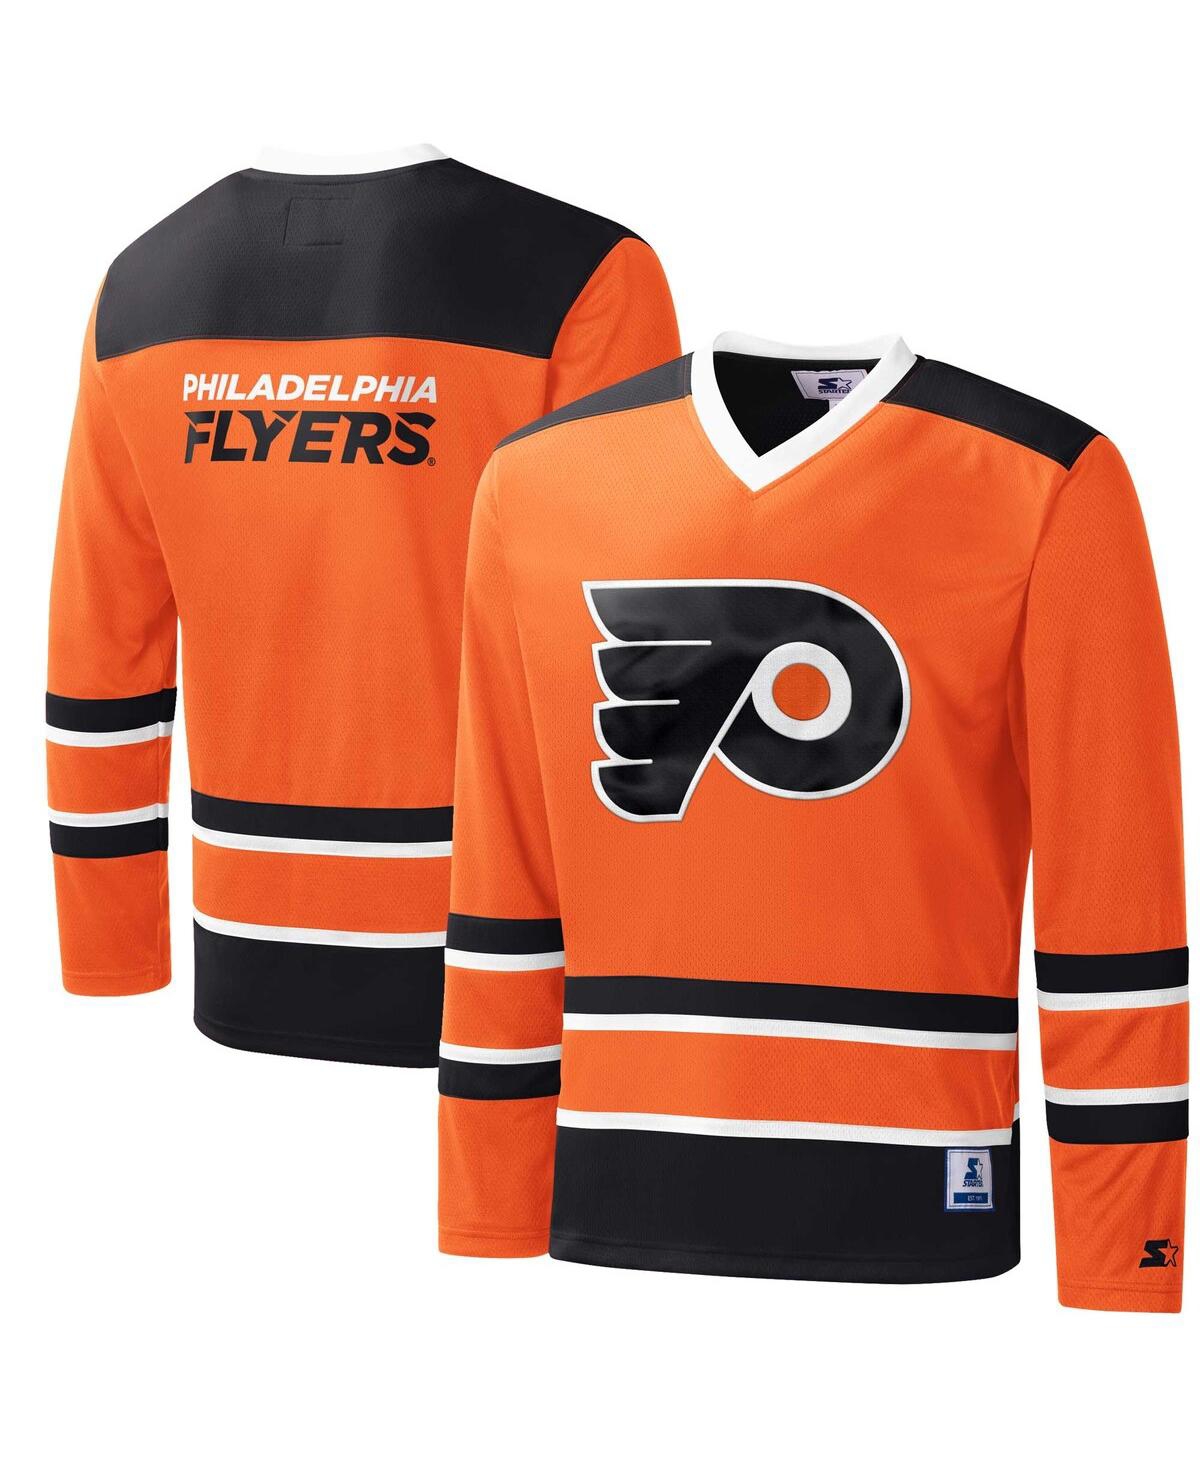 Men's Starter Orange, Black Philadelphia Flyers Cross Check Jersey V-Neck Long Sleeve T-shirt - Orange, Black